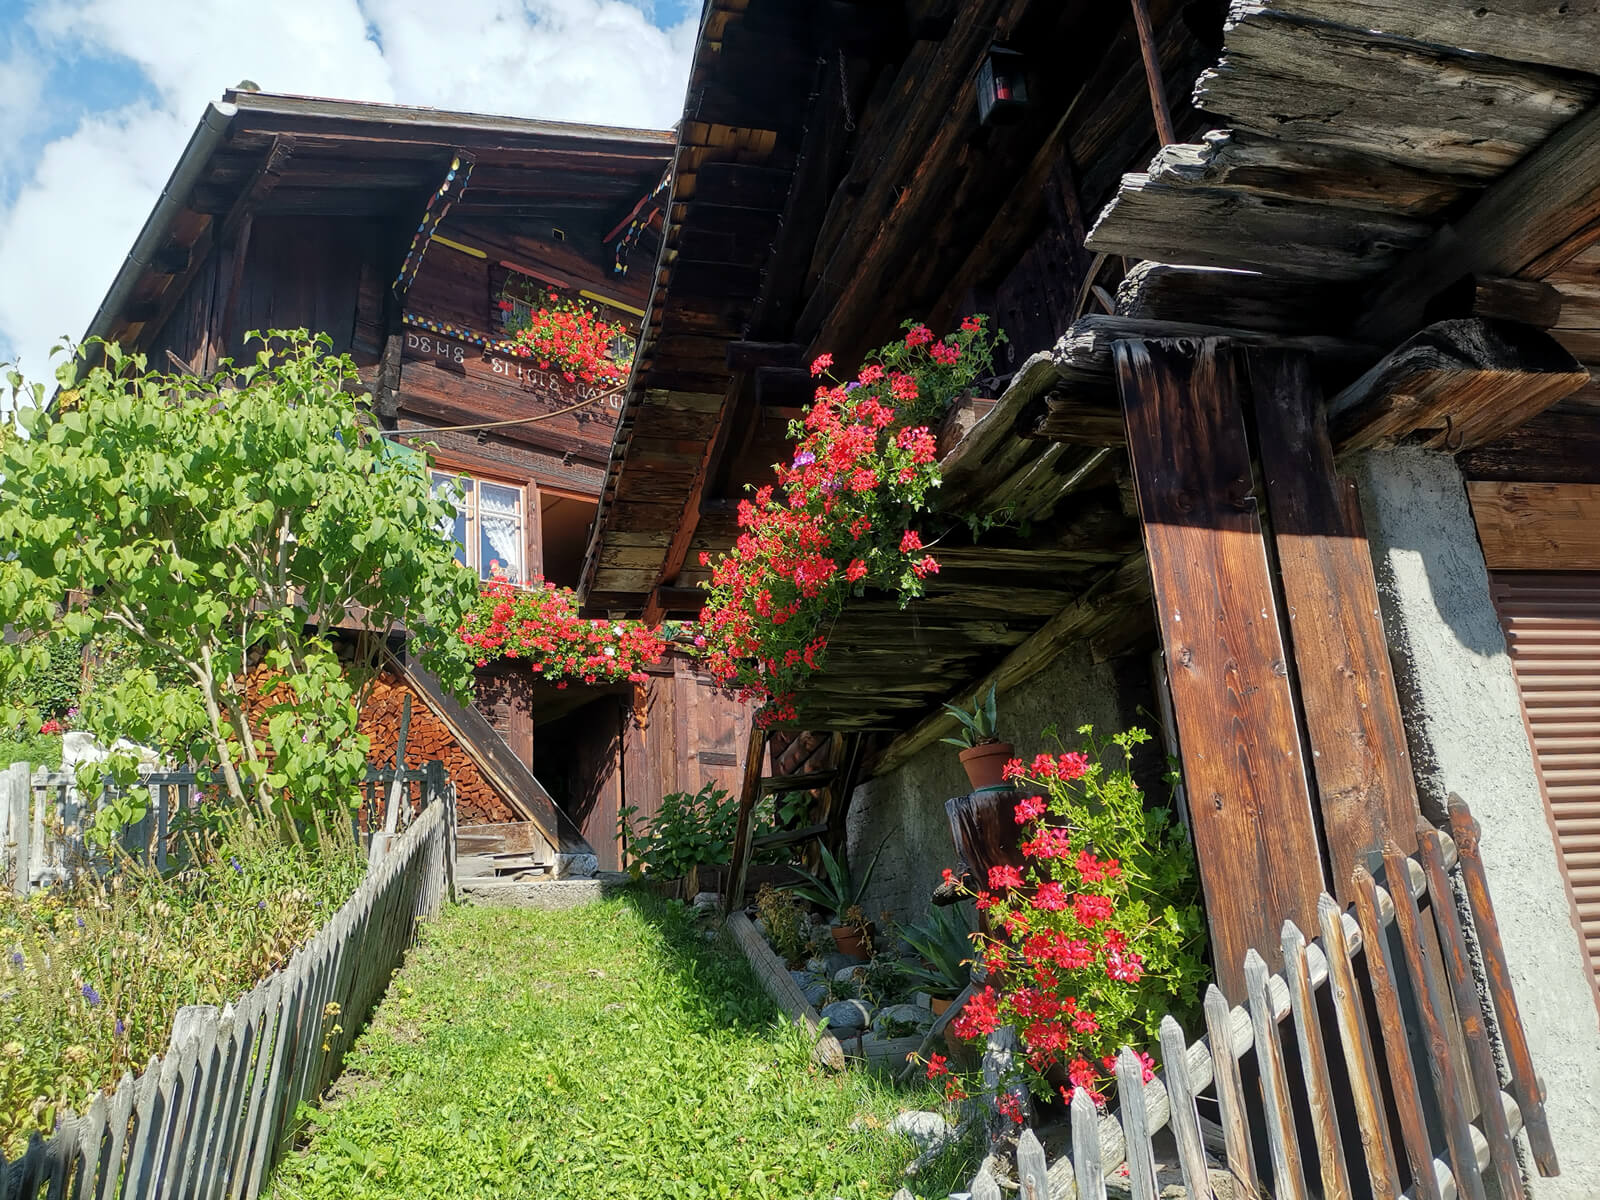 The car-free village of Mürren in Switzerland